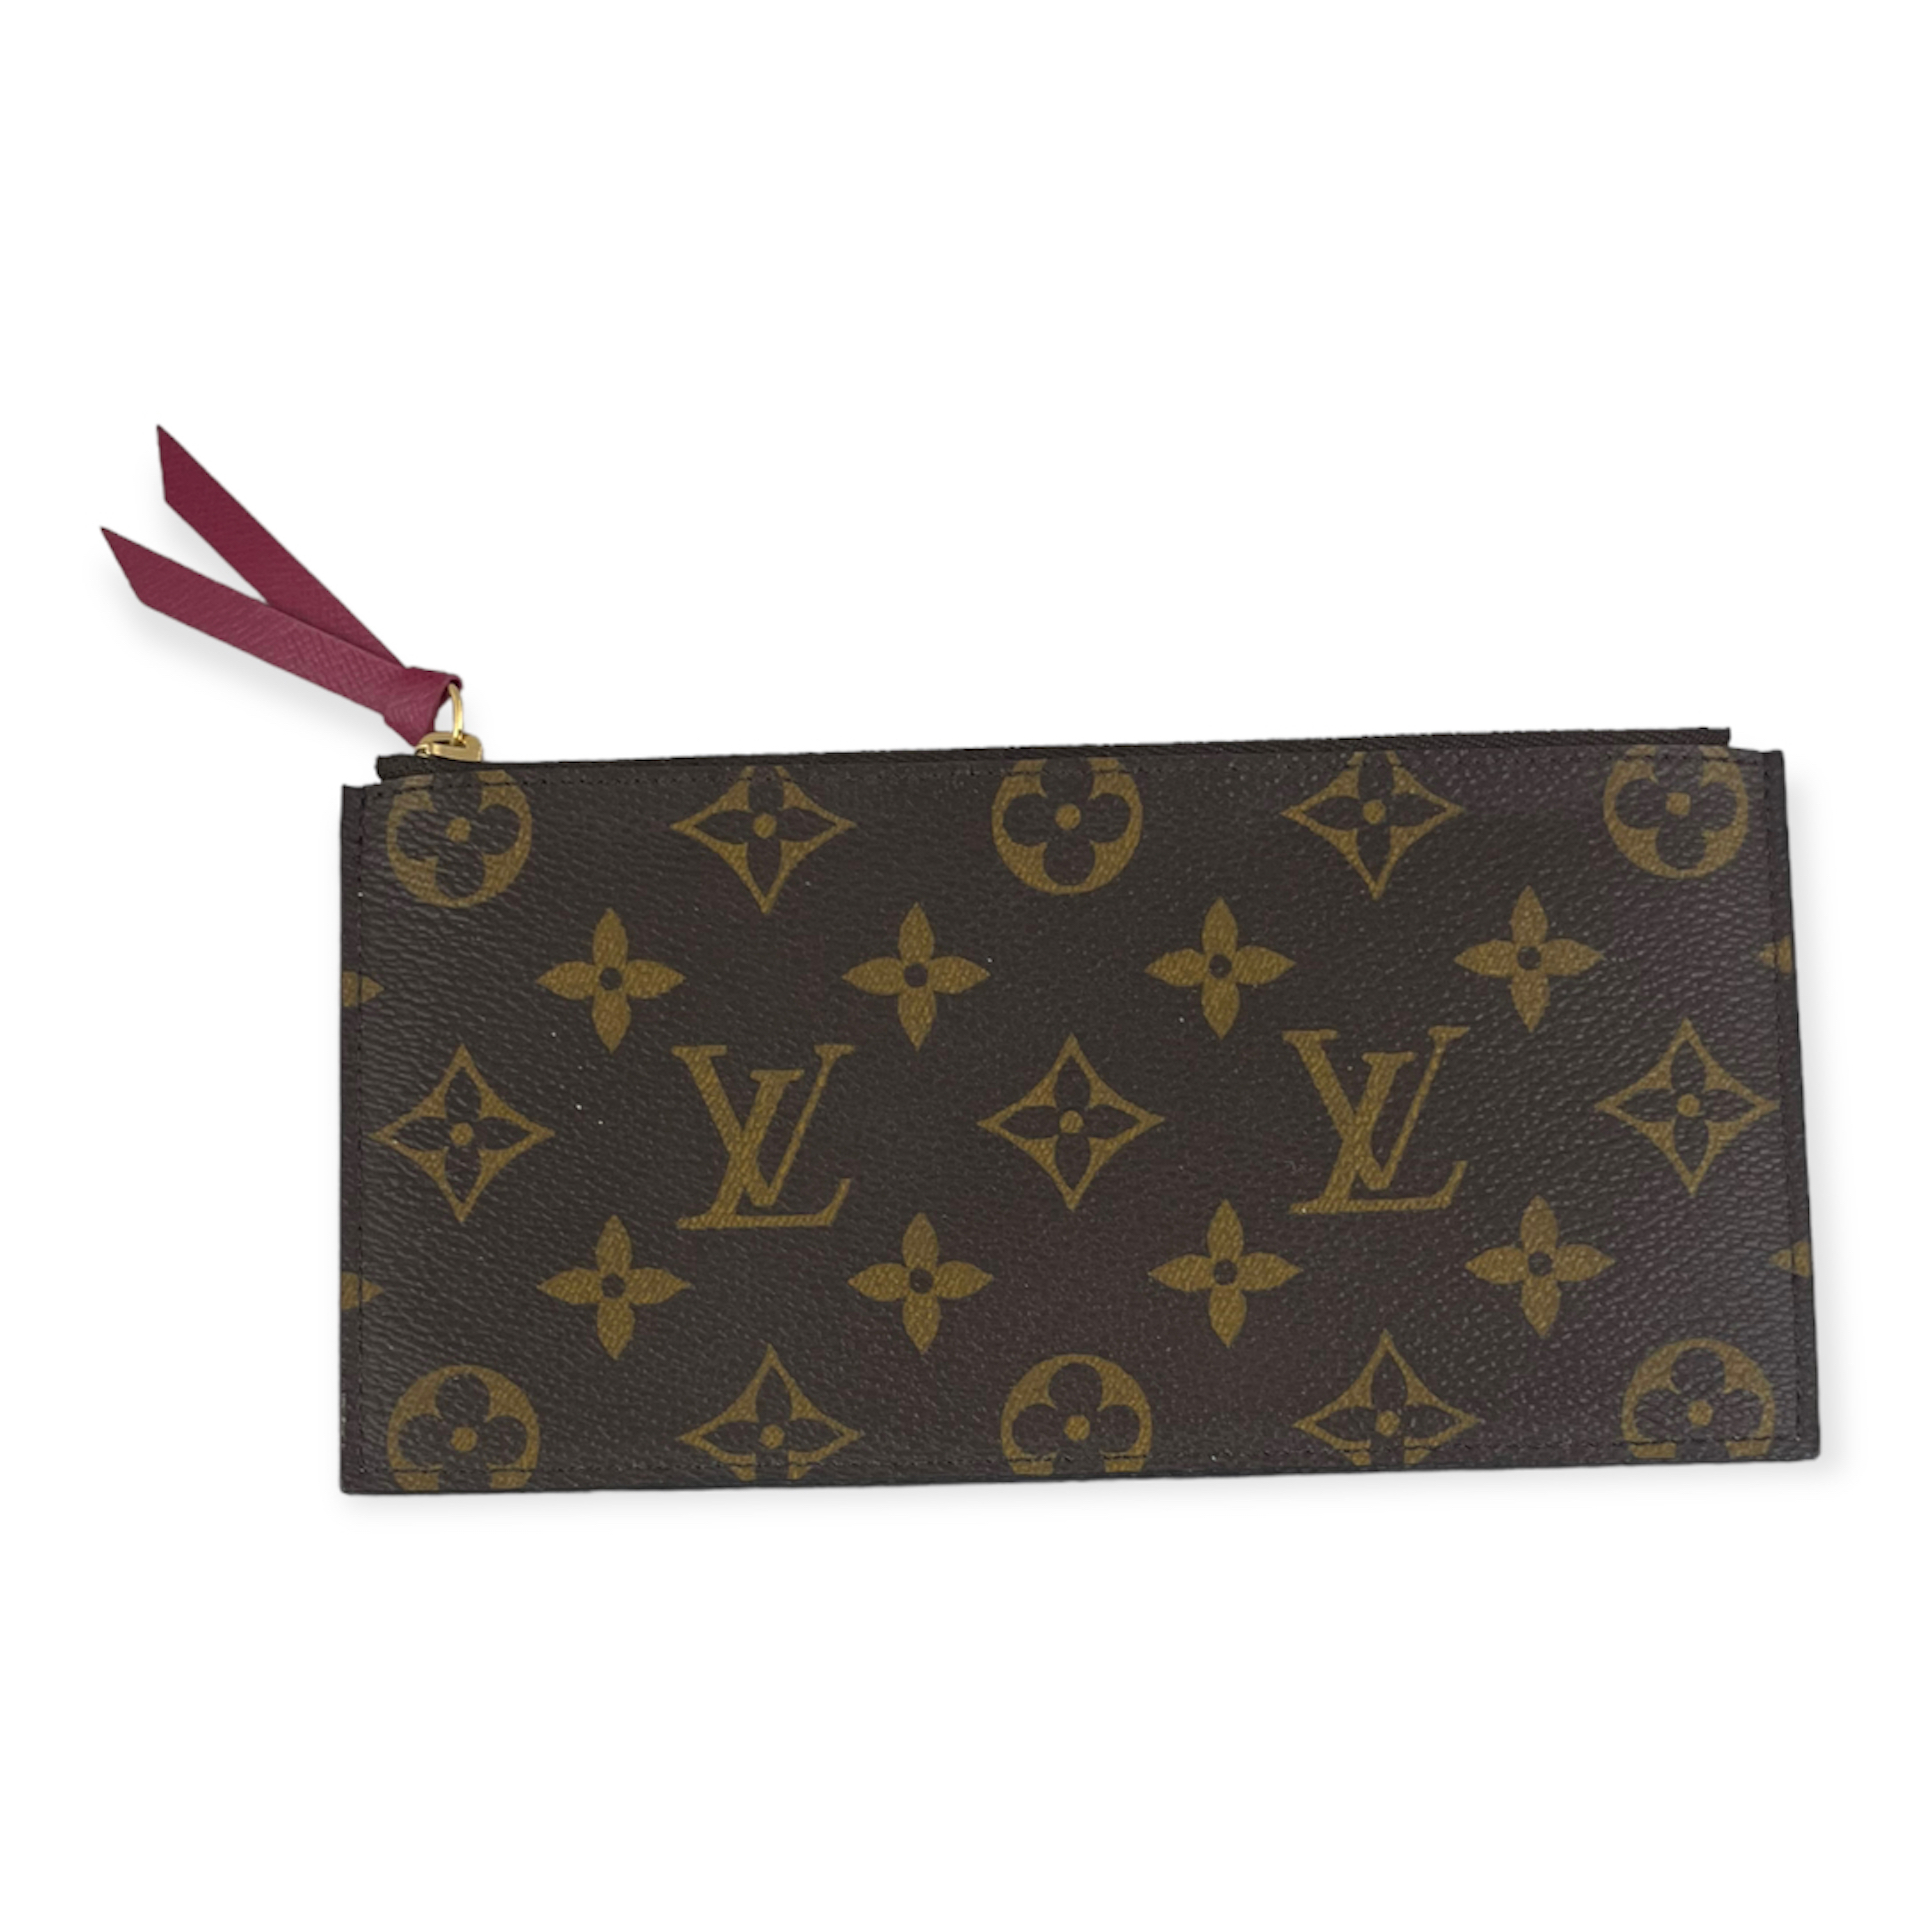 Louis Vuitton Felicie Pochette Monogram Canvas - ShopStyle Crossbody Bags